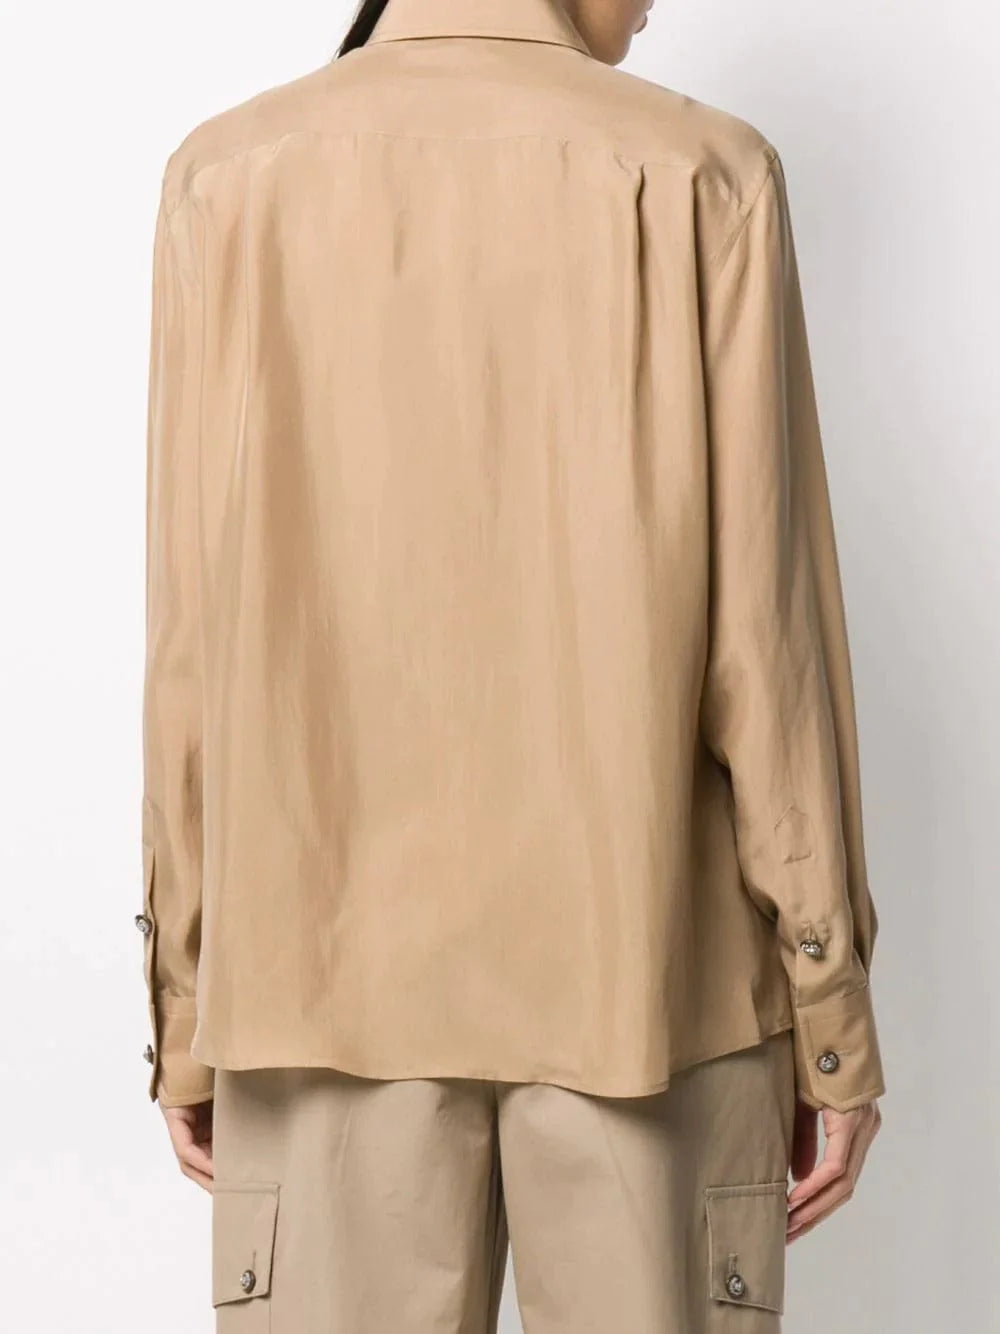 Dolce & Gabbana Button-Embellished Silk Shirt